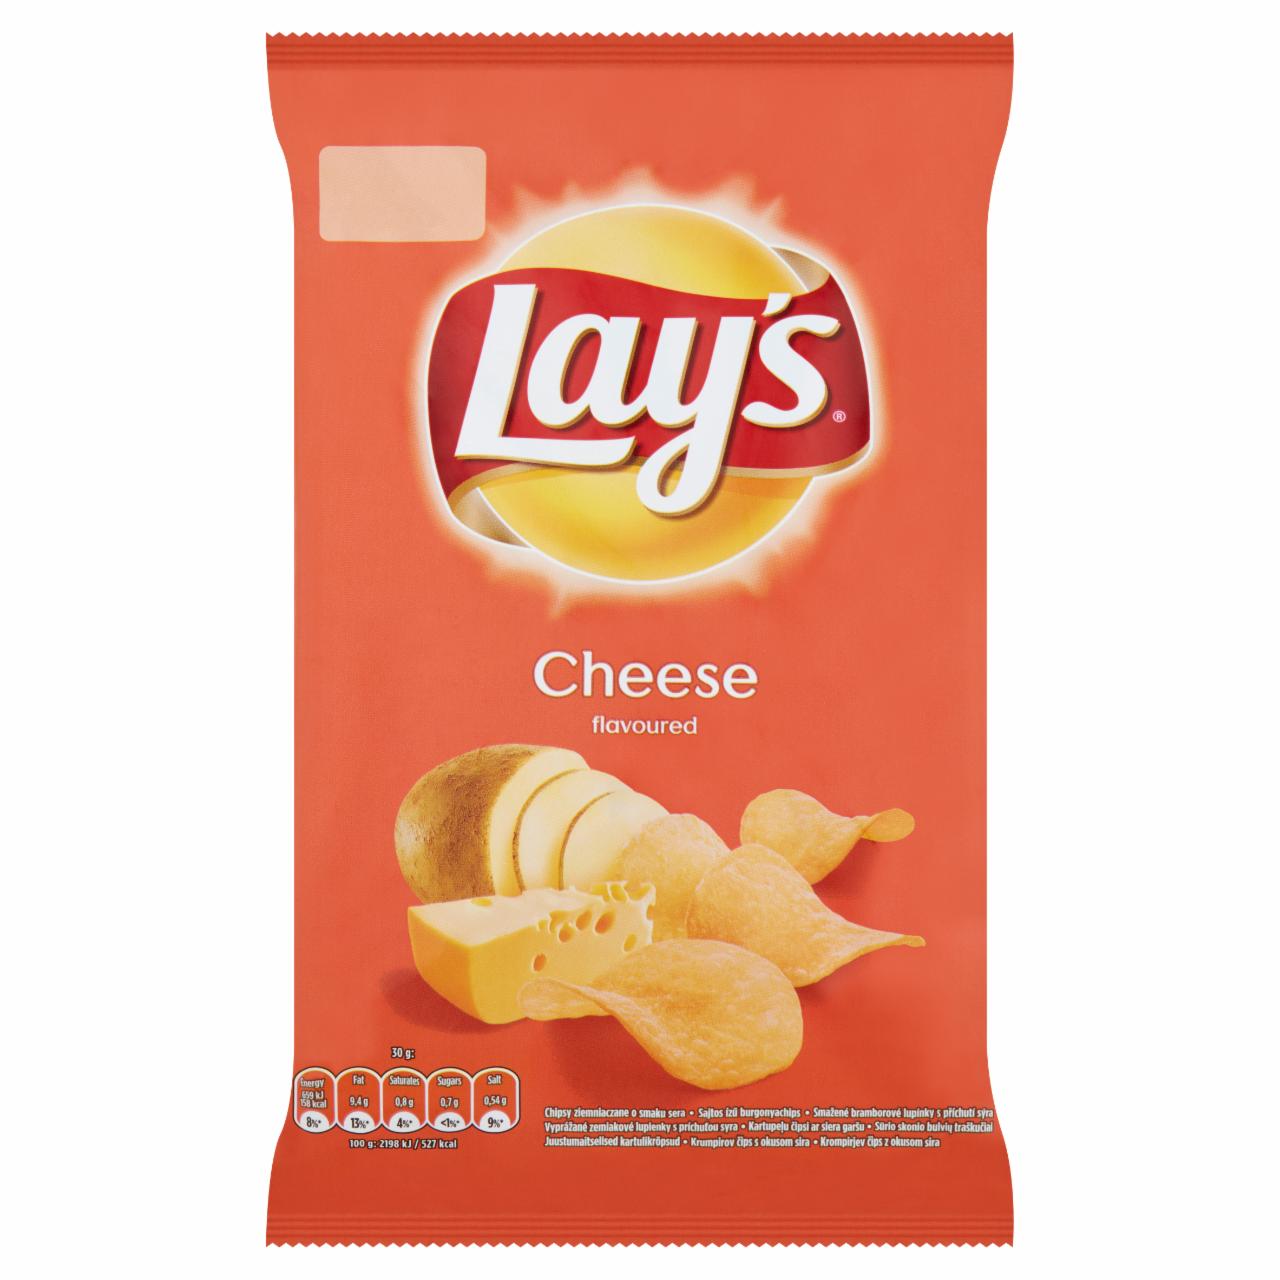 Képek - Lay's sajtos ízű burgonyachips 70 g